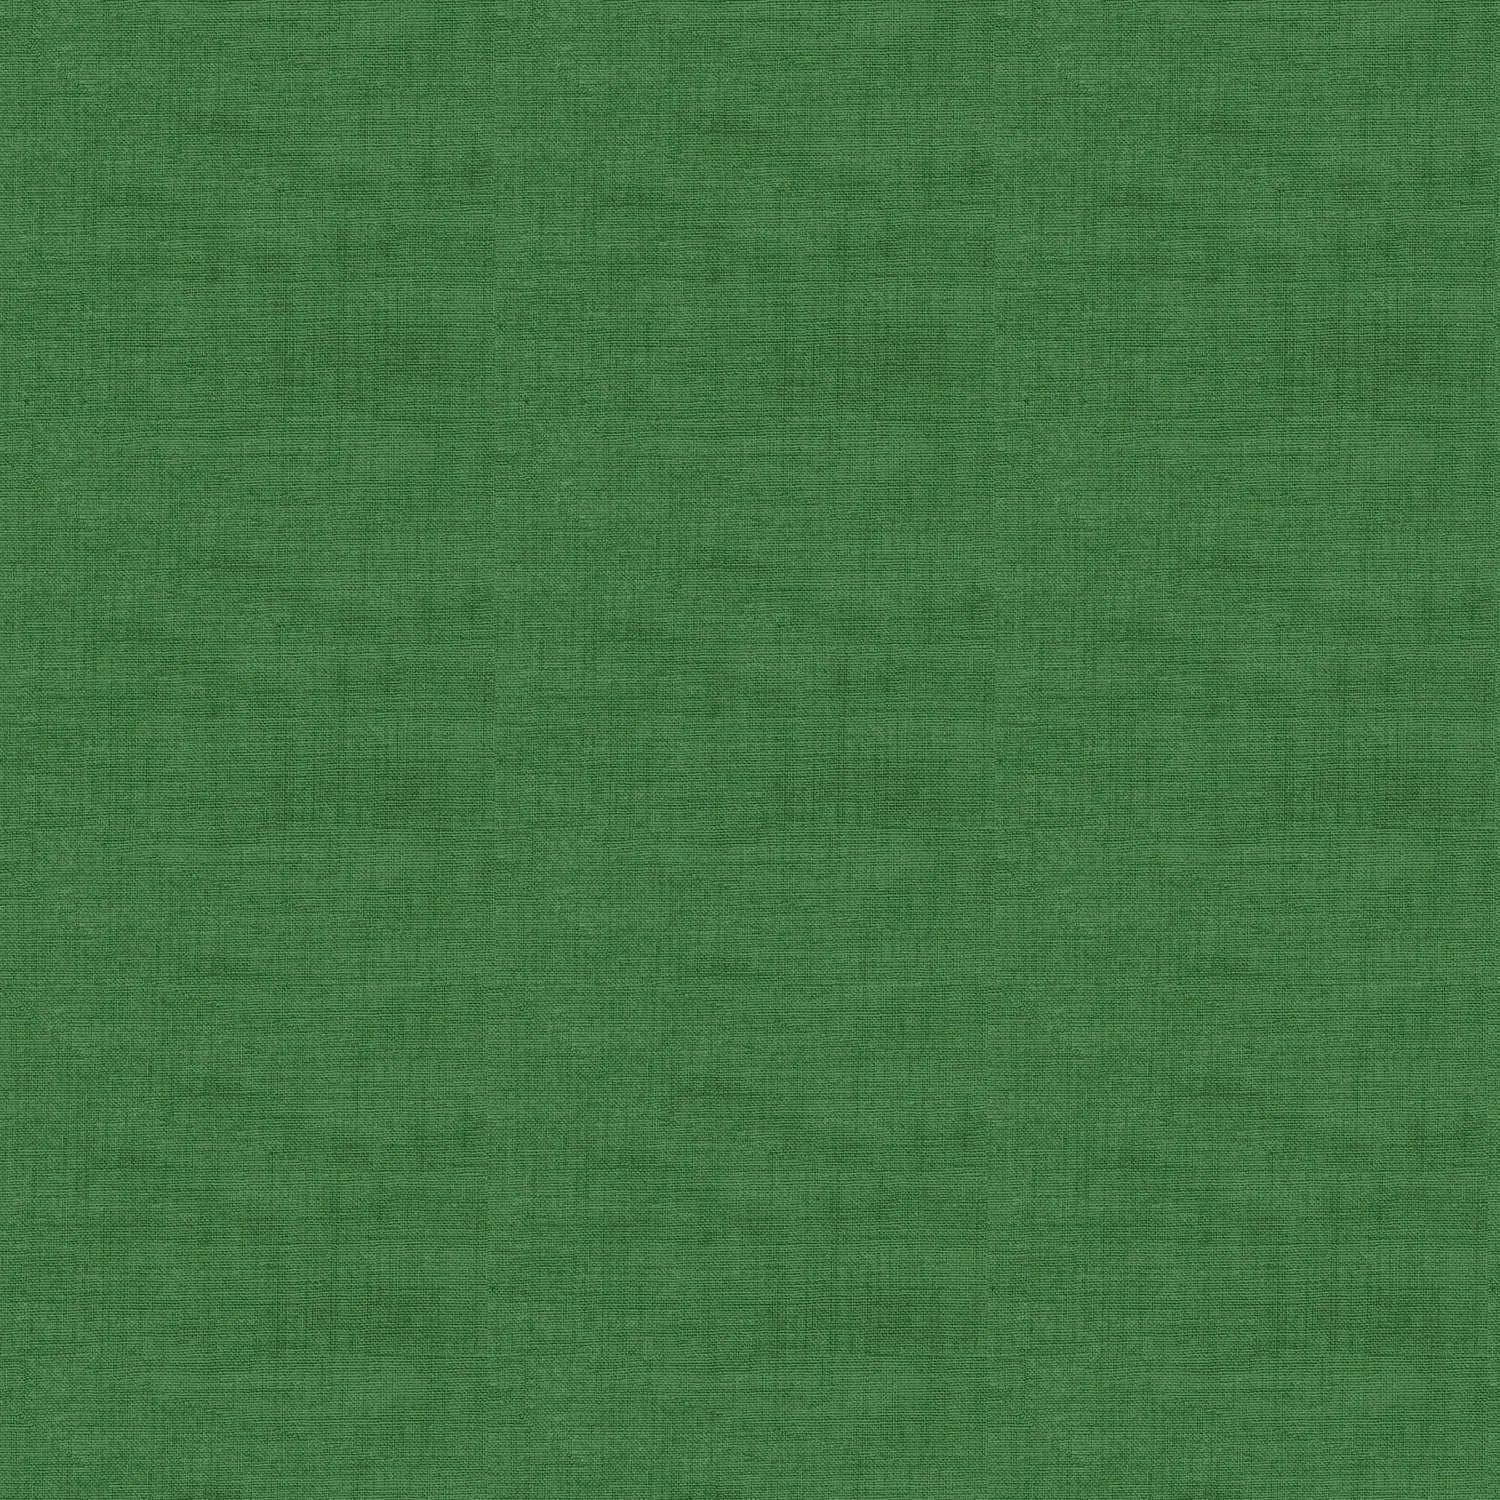 Linen texture grass Grasgrün